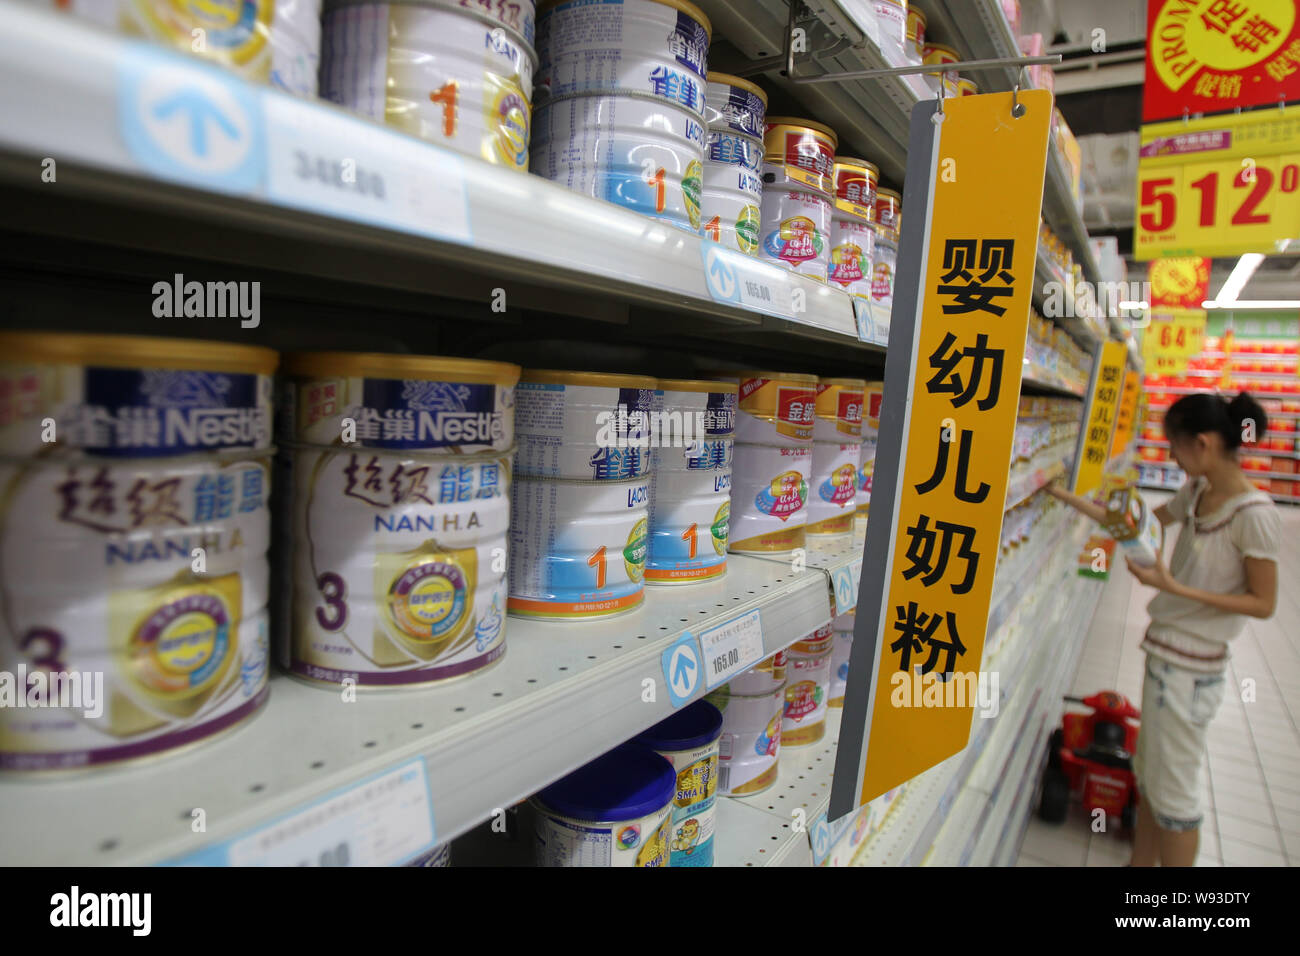 Boîtes de formule de Bébé Nestlé sont en vente dans un supermarché dans la ville de Nantong, Chine de l'est la province de Jiangsu, 2 juillet 2013. Nestle SA, a dit qu'il va couper inf Banque D'Images